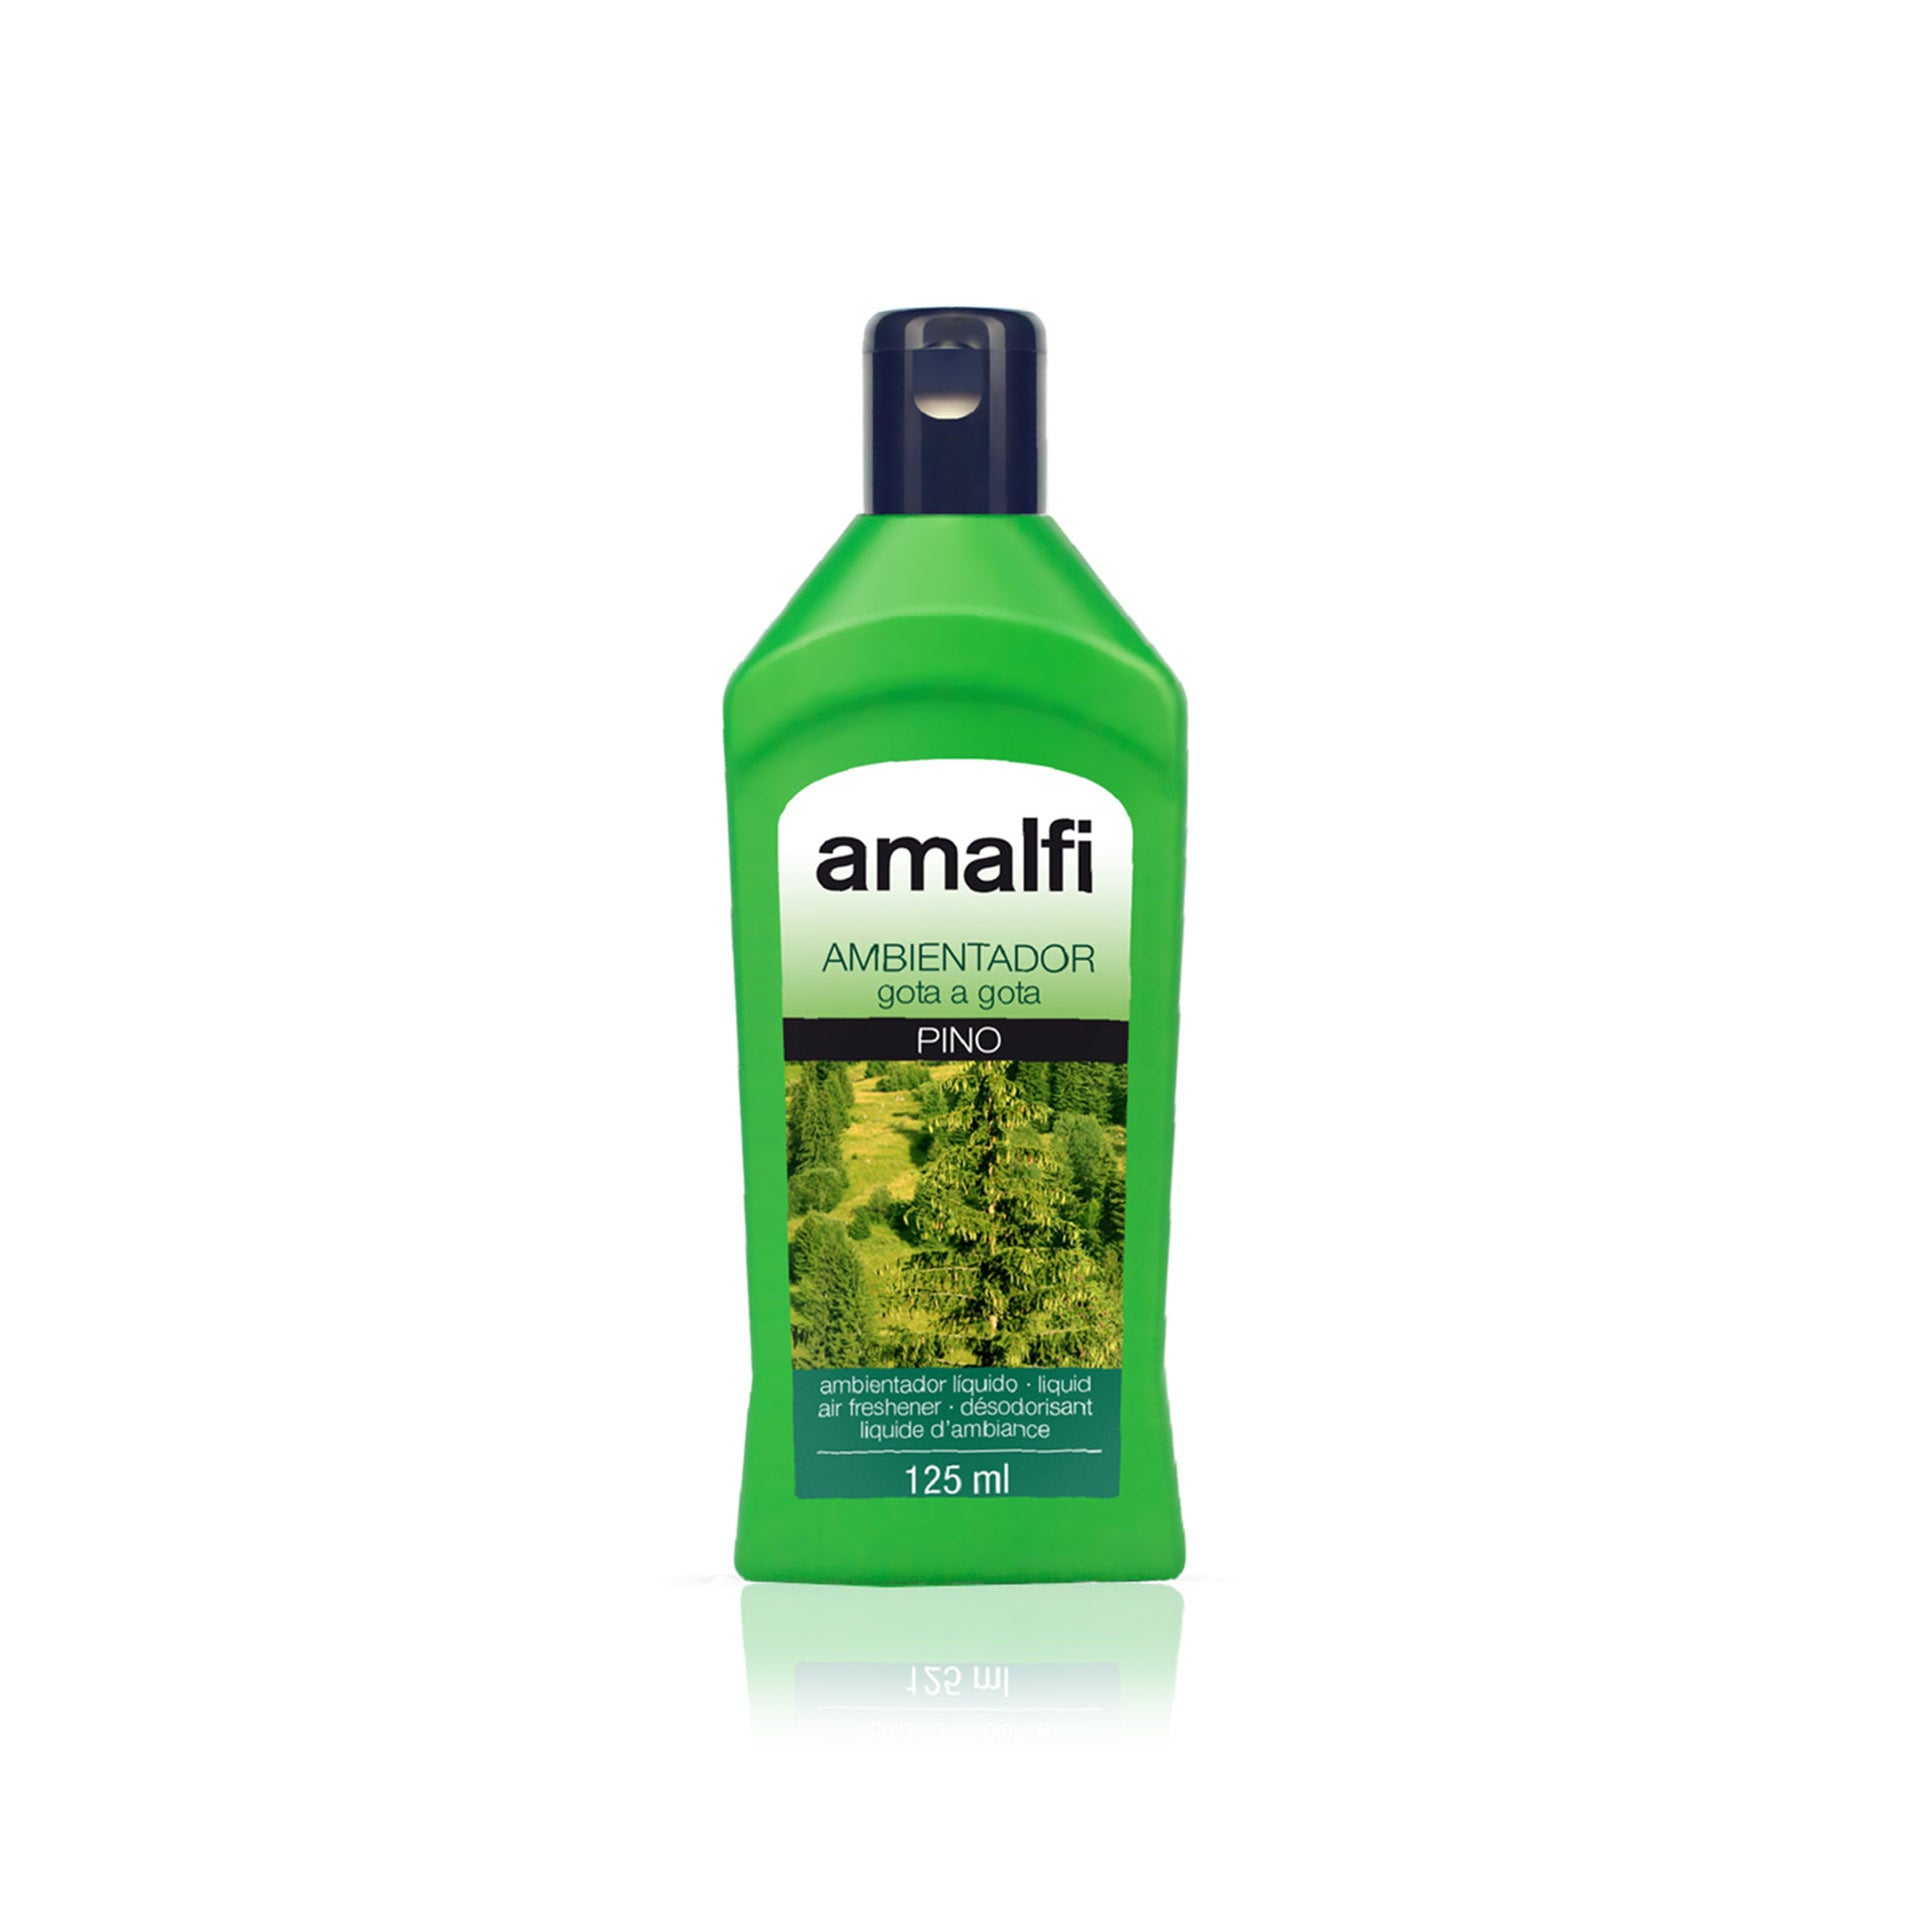 Amalfi Ambientador Gota a Gota Pinho 125 ml